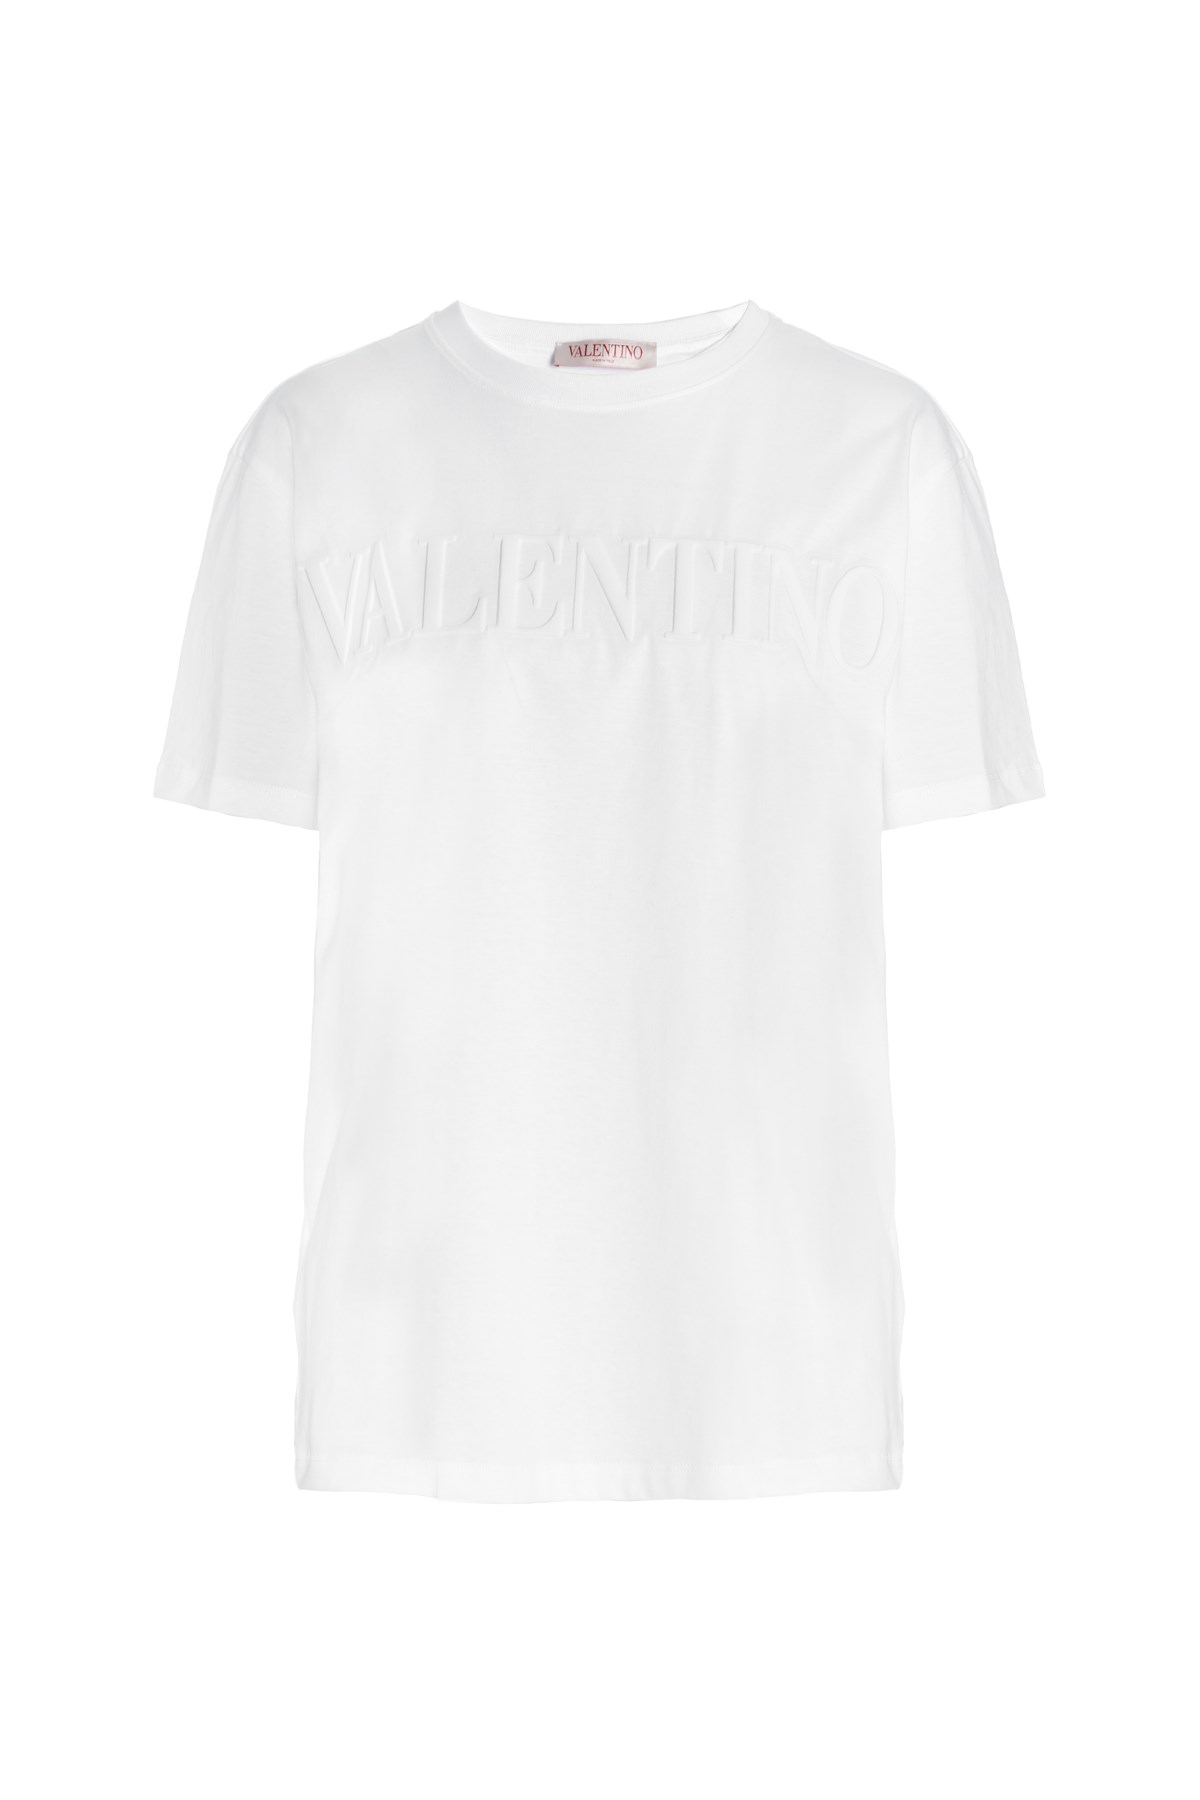 VALENTINO T-Shirt Mit Geprägtem Logo